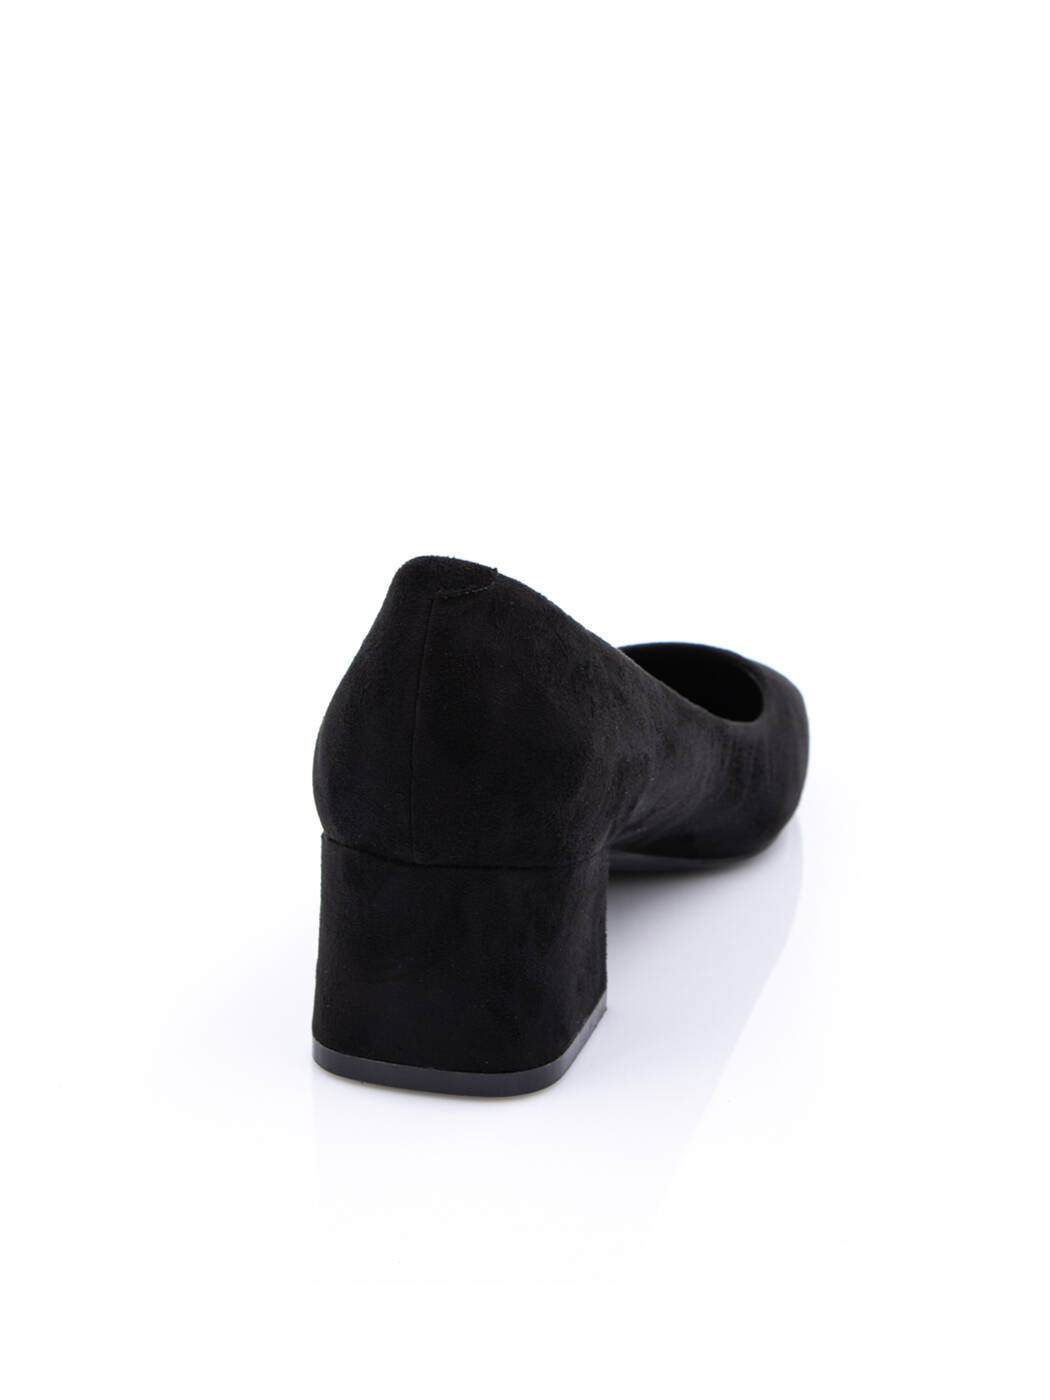 Туфли женские черные экозамша каблук устойчивый демисезон от производителя AM вид 1